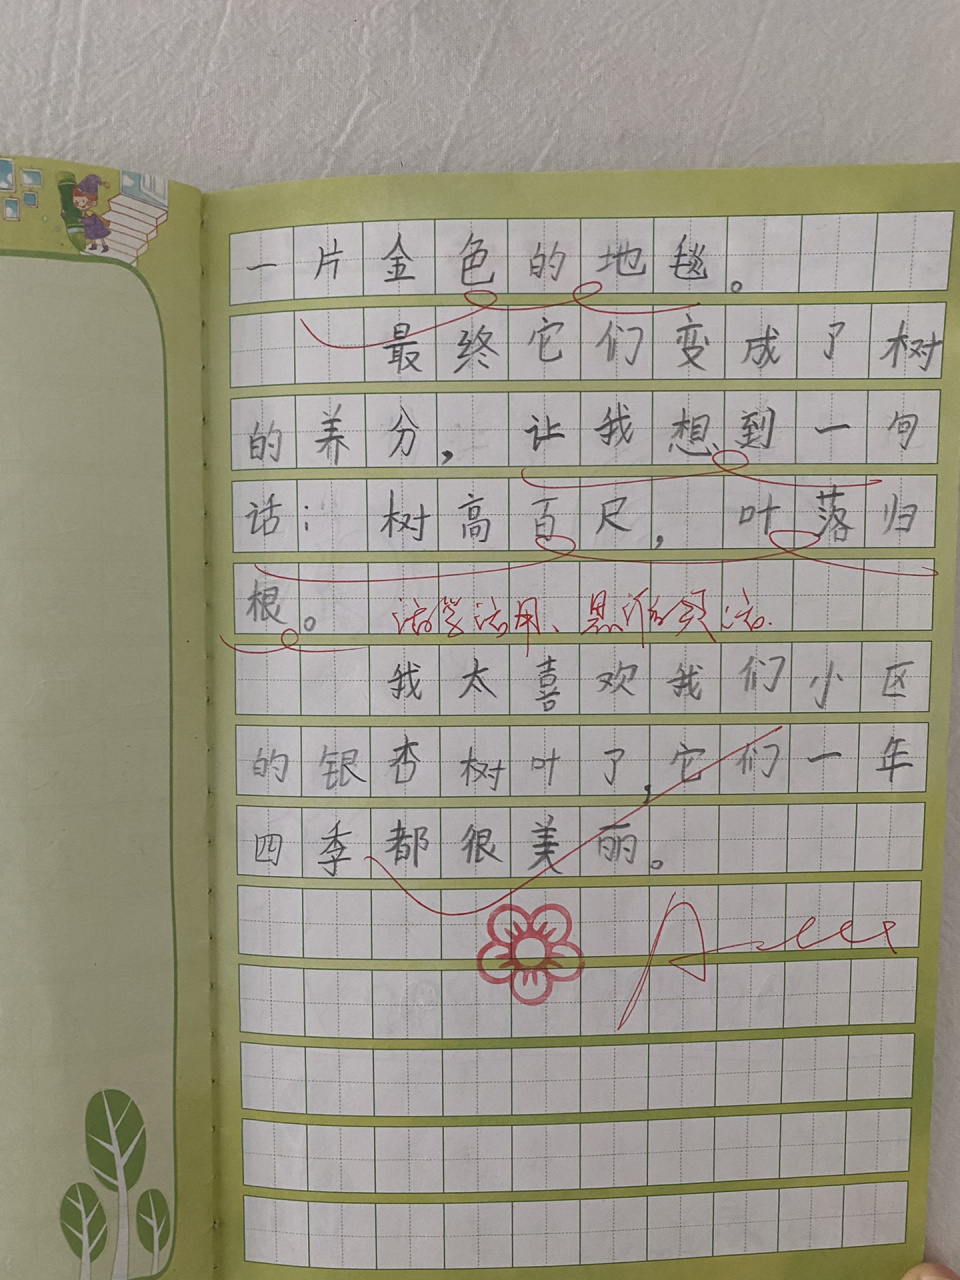 小学生作文《银杏树叶》 二年级(上)画图写话 虽然每一次认真的写话都